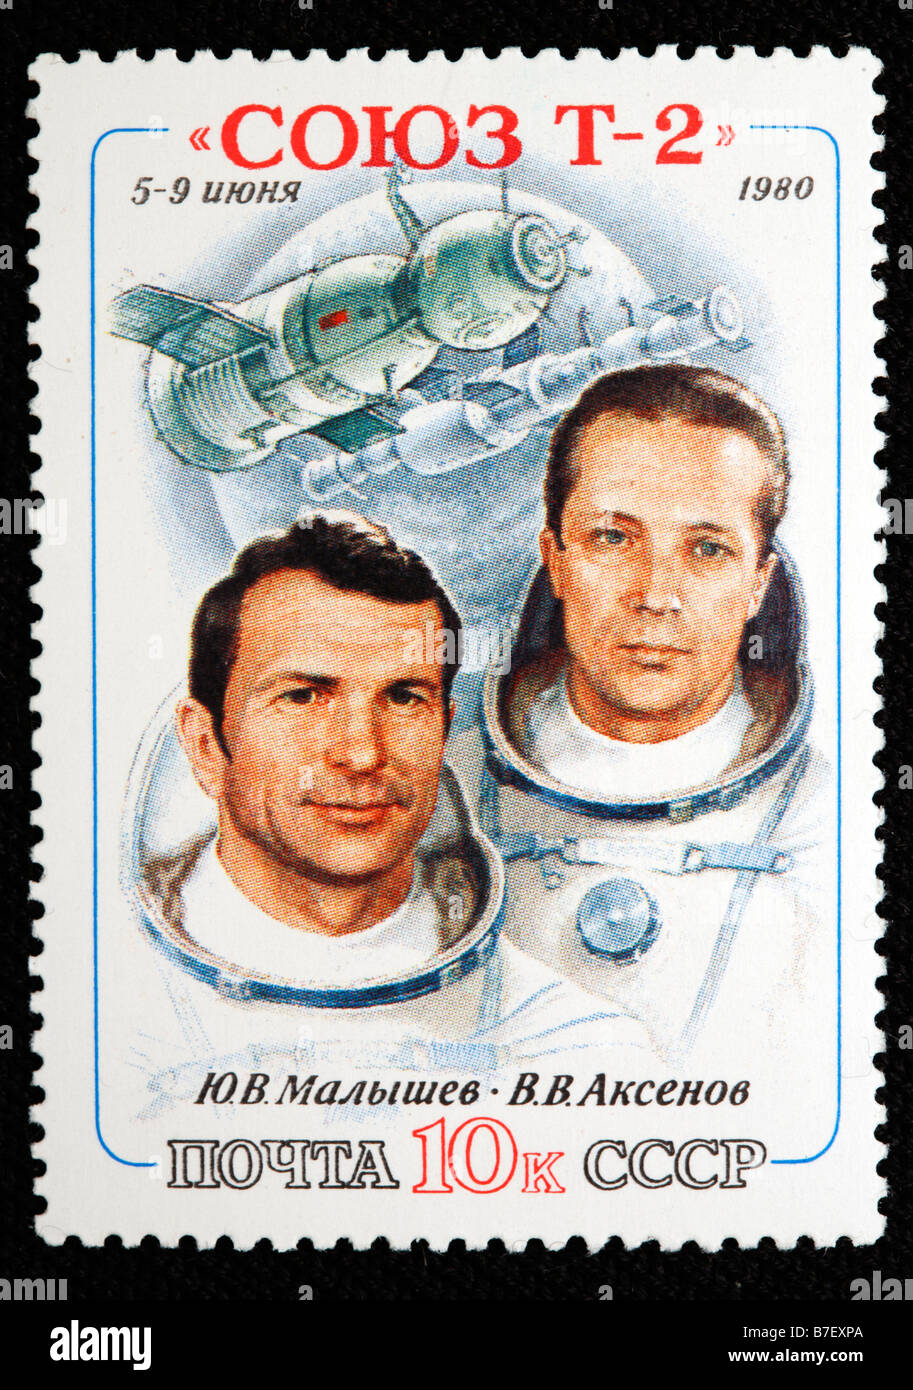 Sowjetischen Astronauten Malyshev und Aksenov, Briefmarke, UdSSR, 1980 Stockfoto